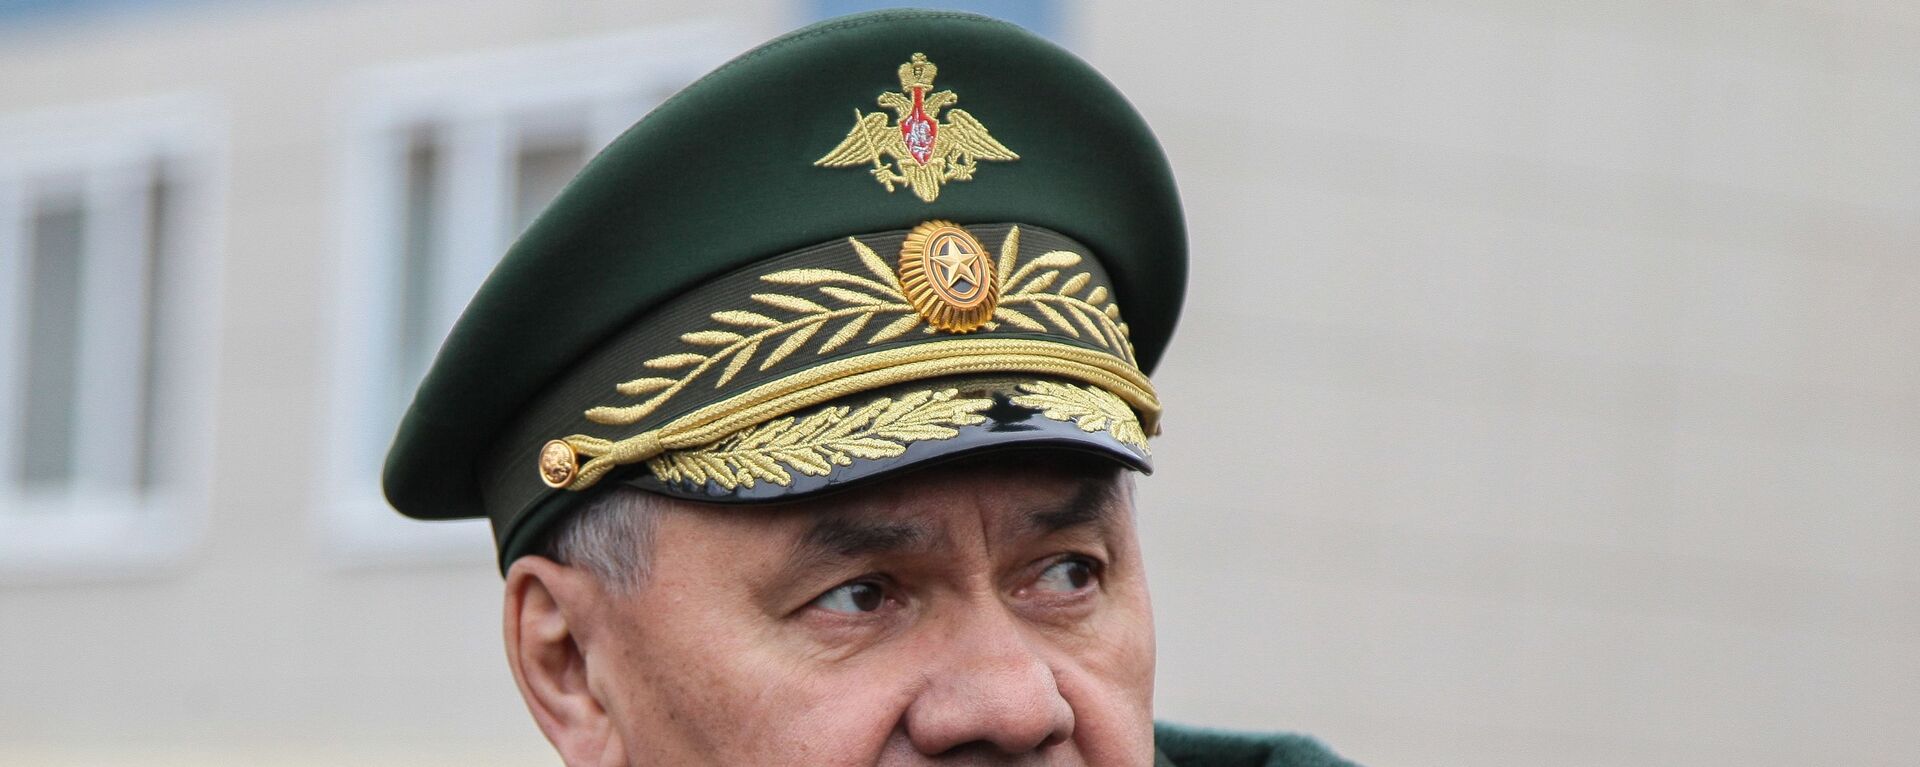 وزير الدفاع الروسي سيرغي شويغو يزور الأسطول الشمالي، في إقليم مورمانسك، روسيا 13 أبريل 2021 - سبوتنيك عربي, 1920, 29.08.2021